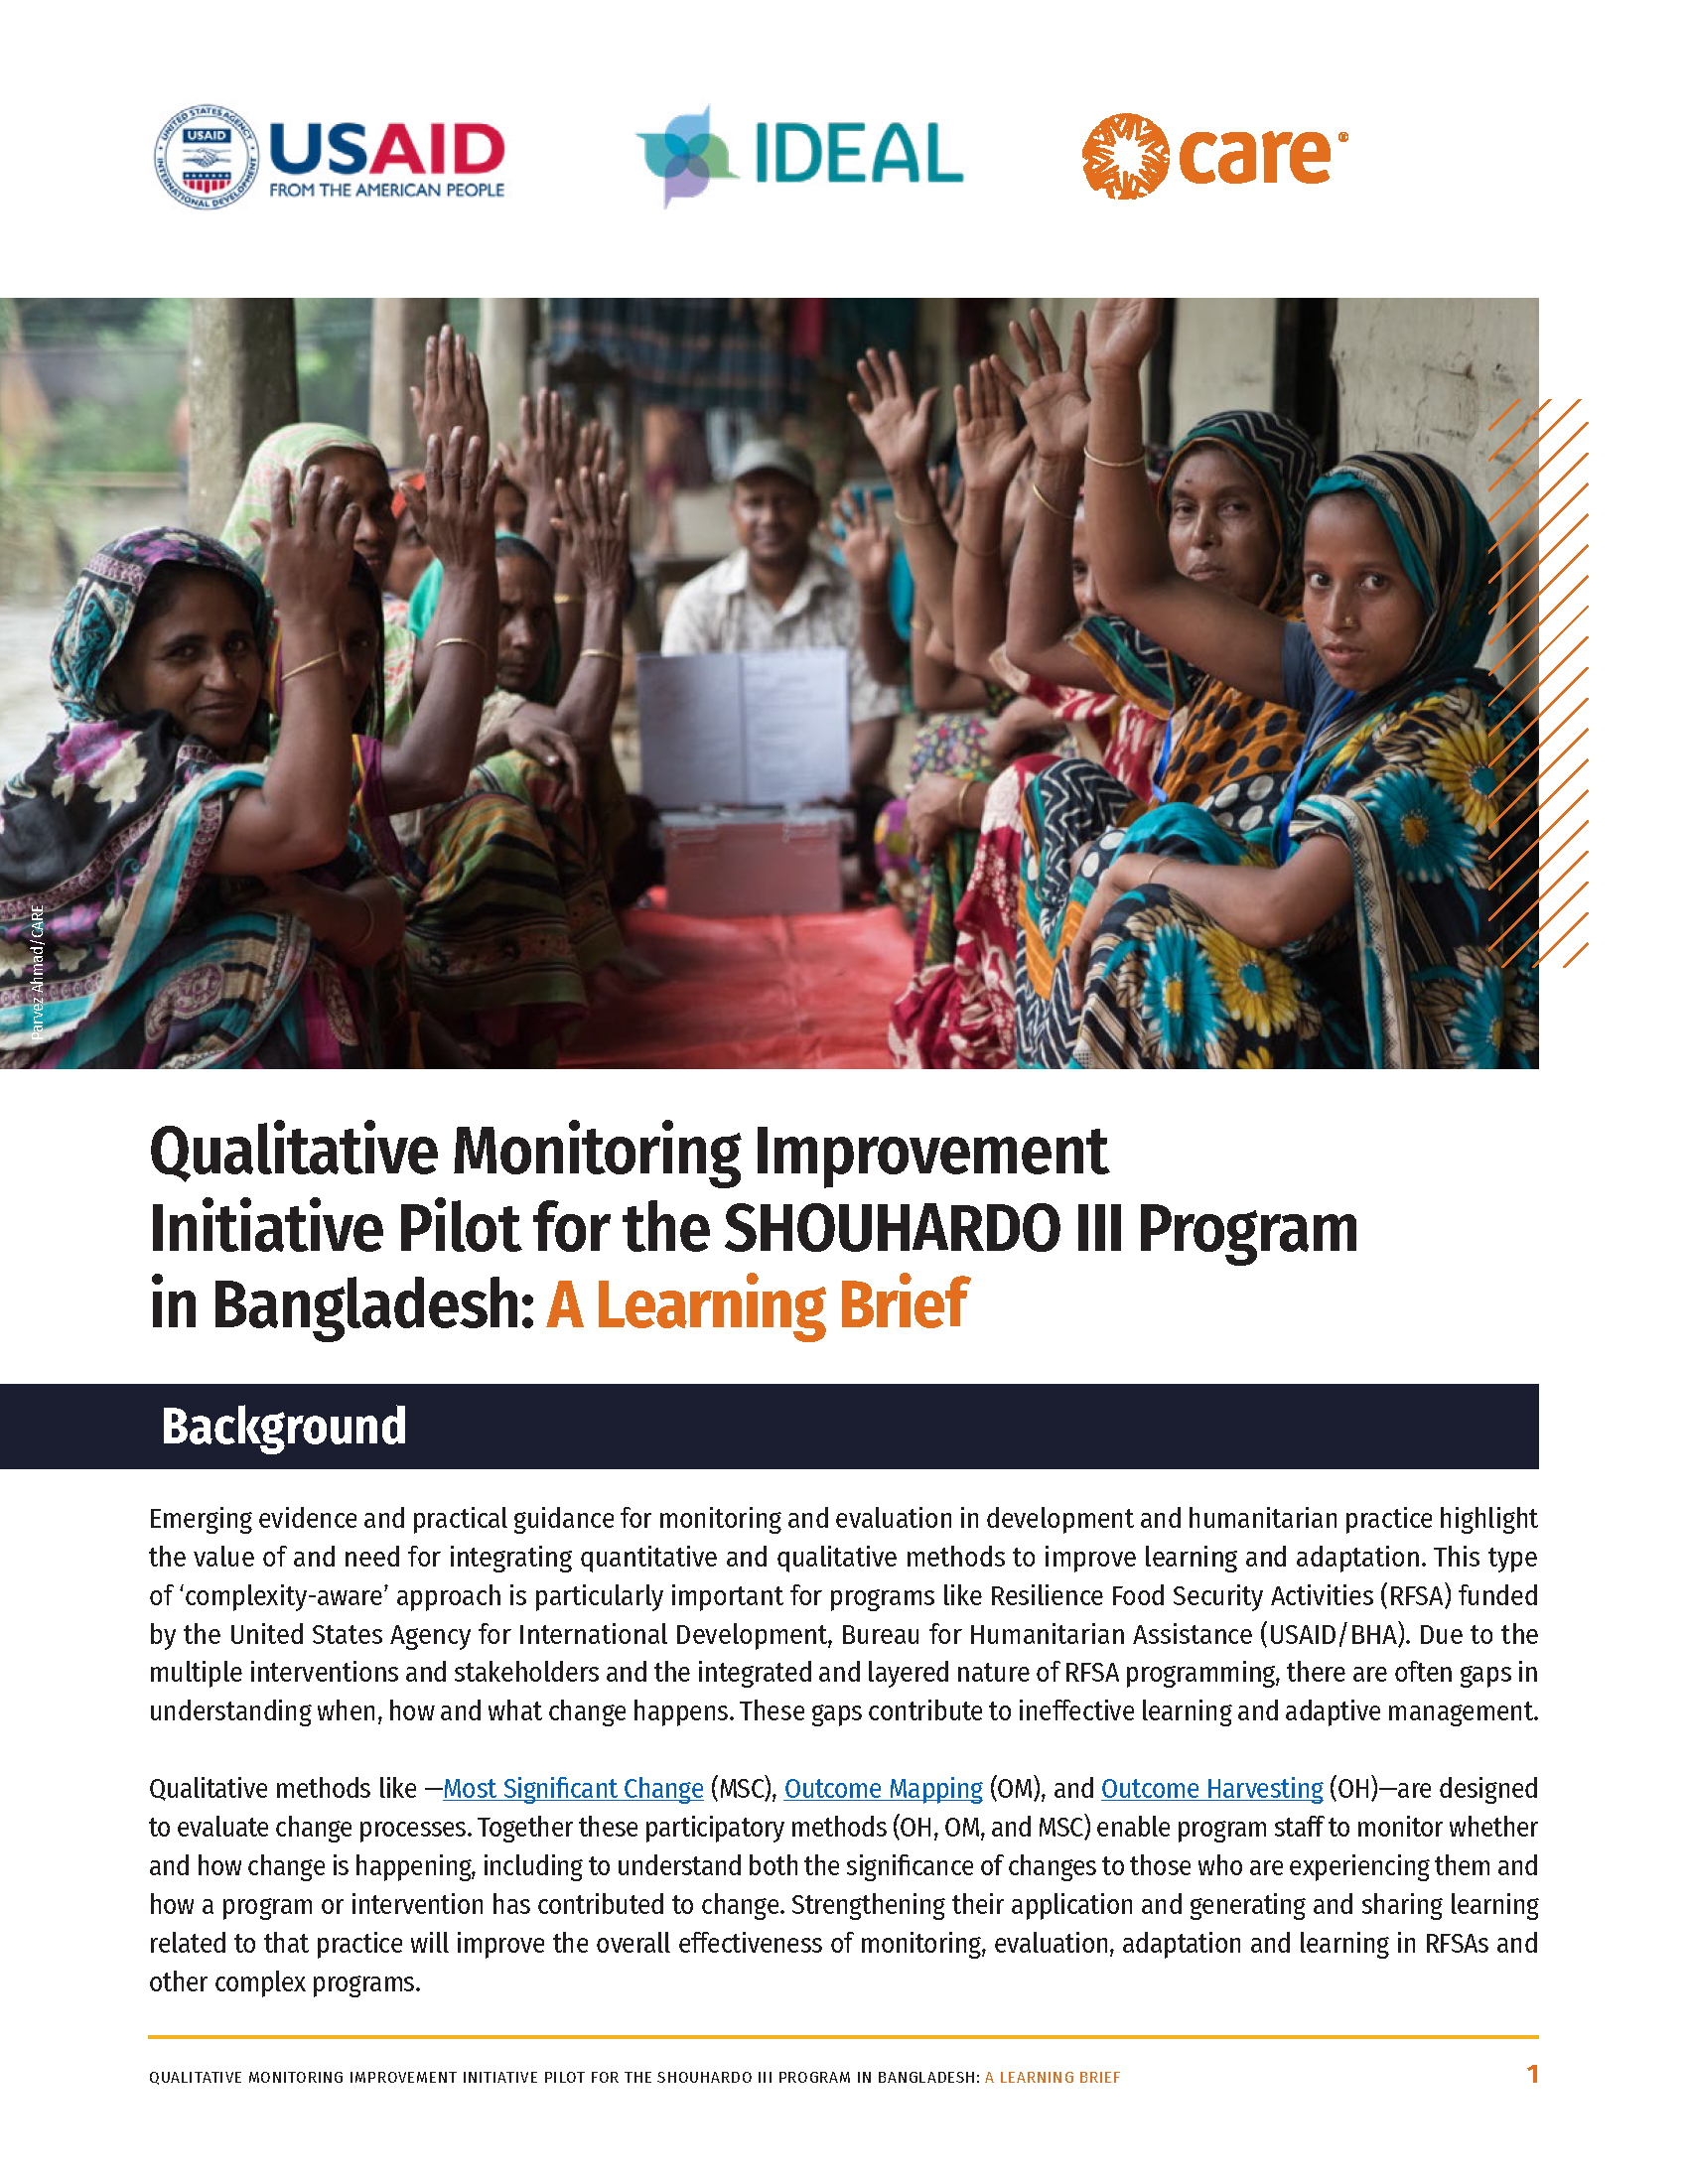 Page de couverture du projet pilote d'initiative d'amélioration du suivi qualitatif pour le programme SHOUHARDO III au Bangladesh : résumé d'apprentissage